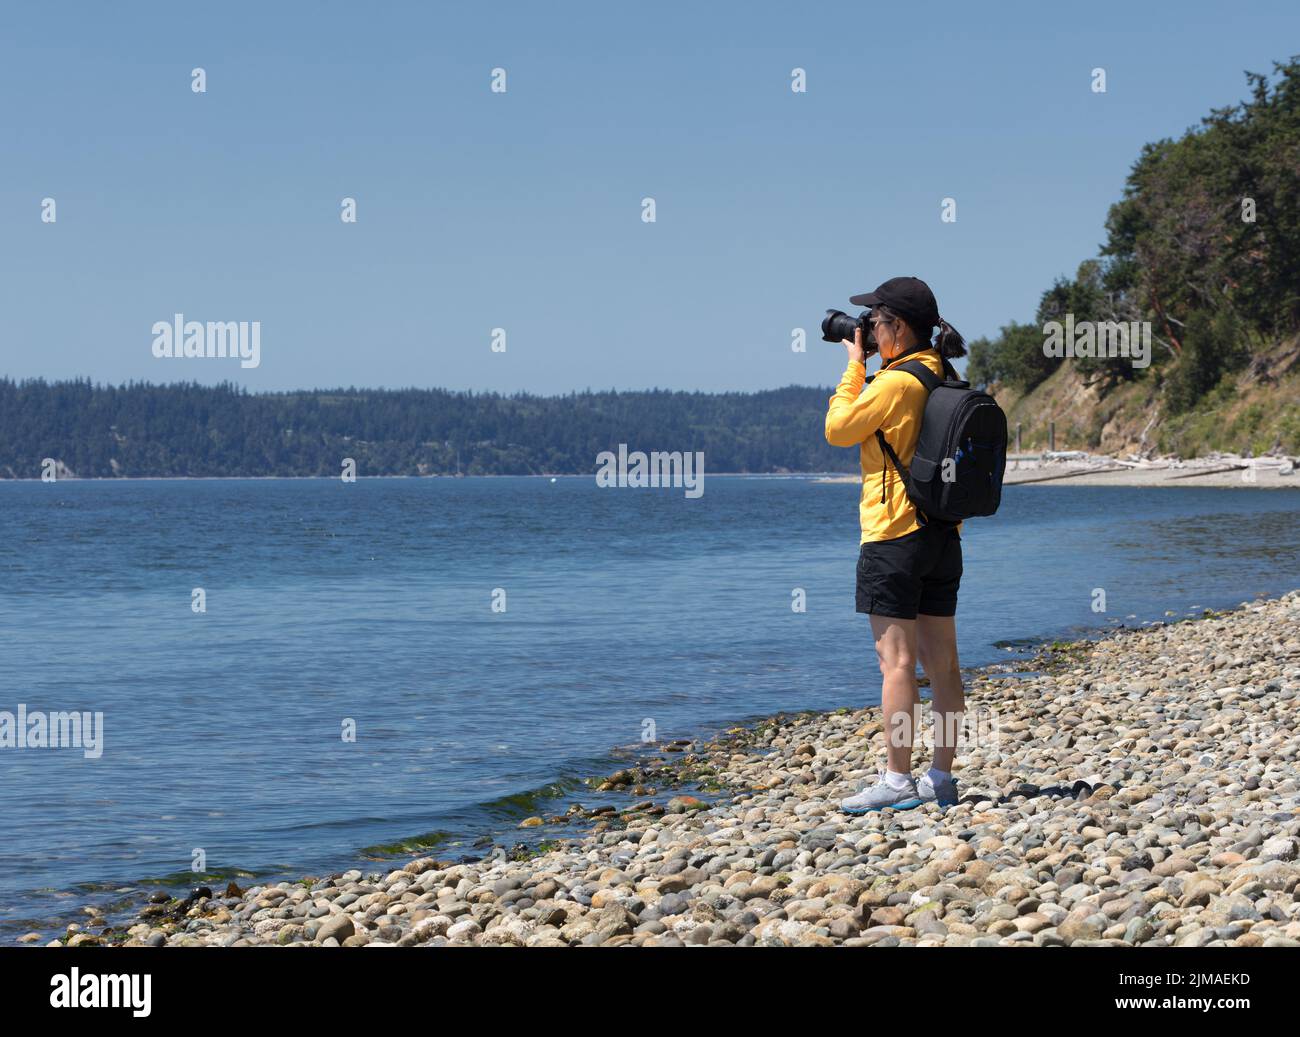 Fotografin, die während eines schönen Sommertages Fotos von einem See gemacht hat Stockfoto